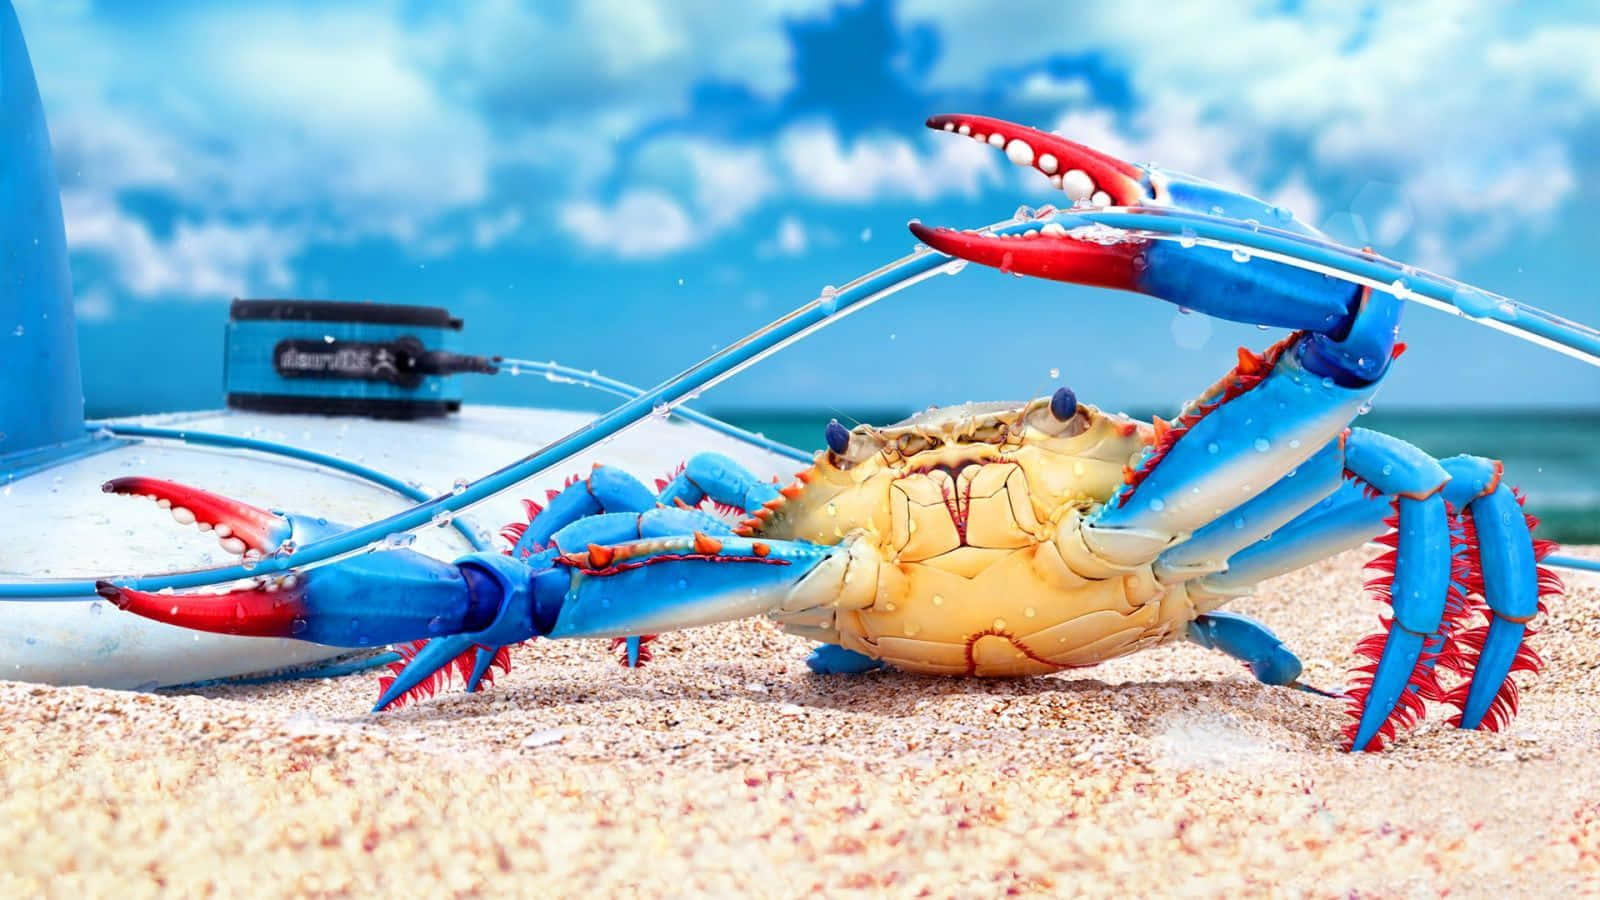 A Close Up of a Crab